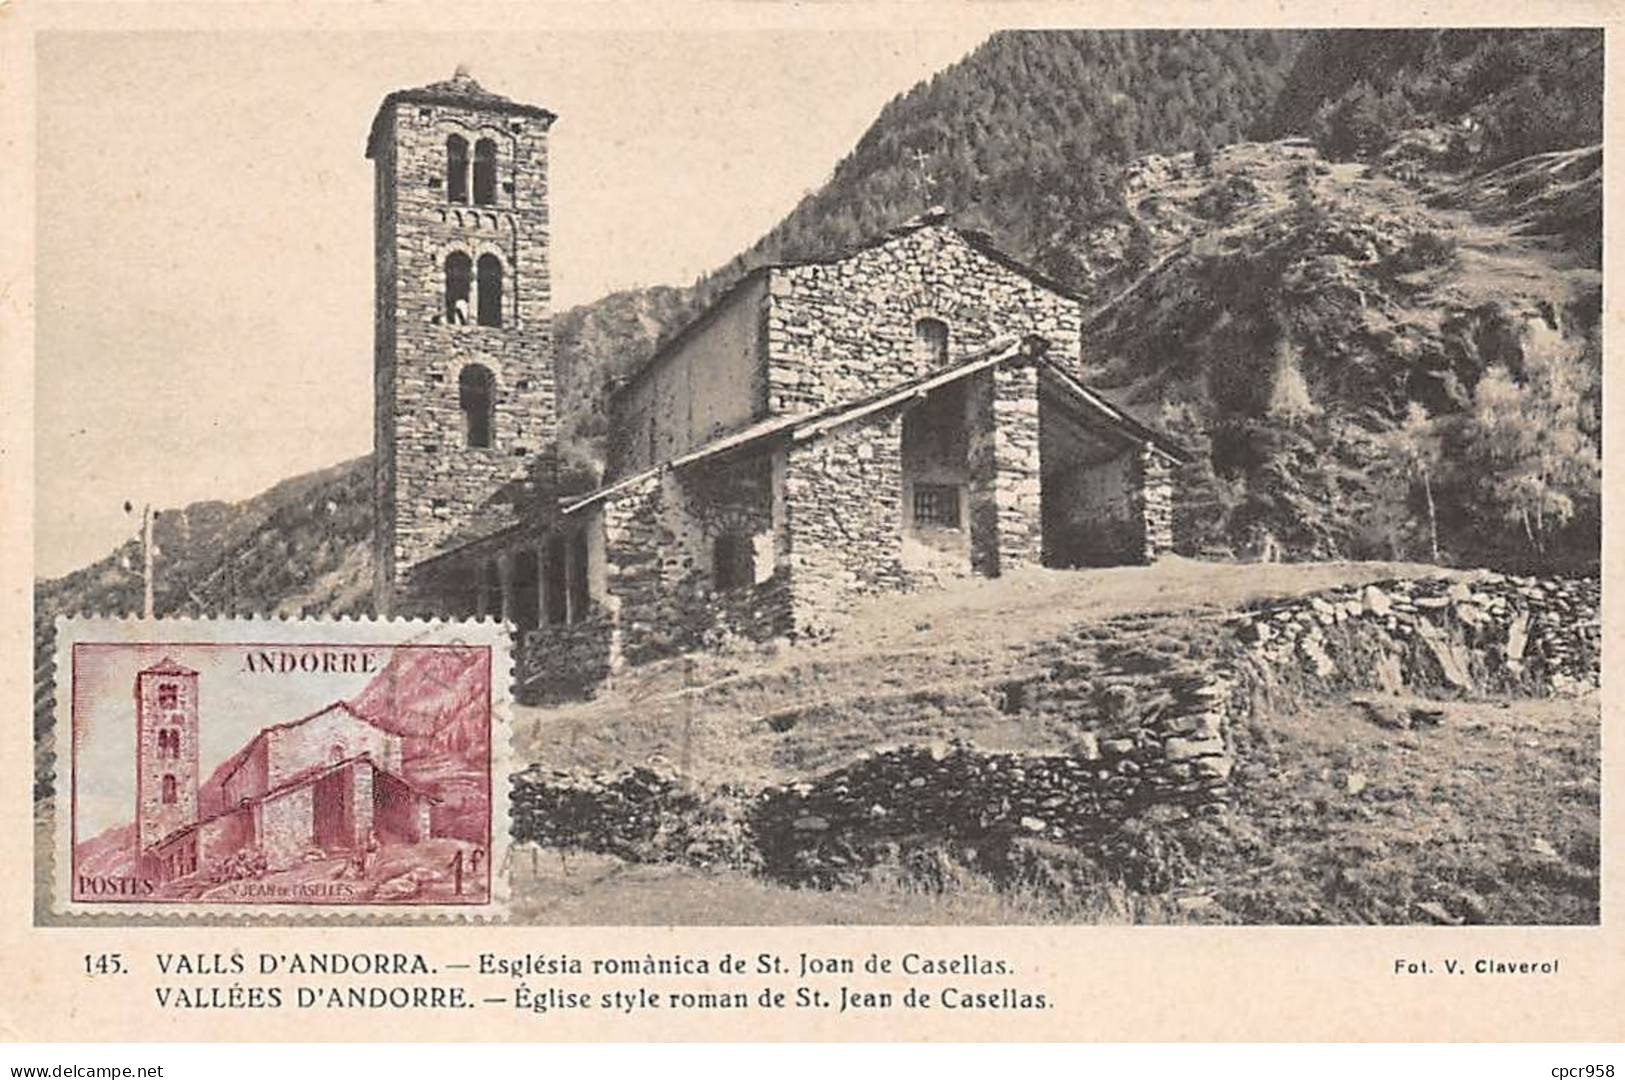 ANDORRE.Carte Maximum.AM14026.1947.Cachet Andorre.Vallée D'Andorre.Eglise Style Roman De St. Jean De Casellas - Gebraucht